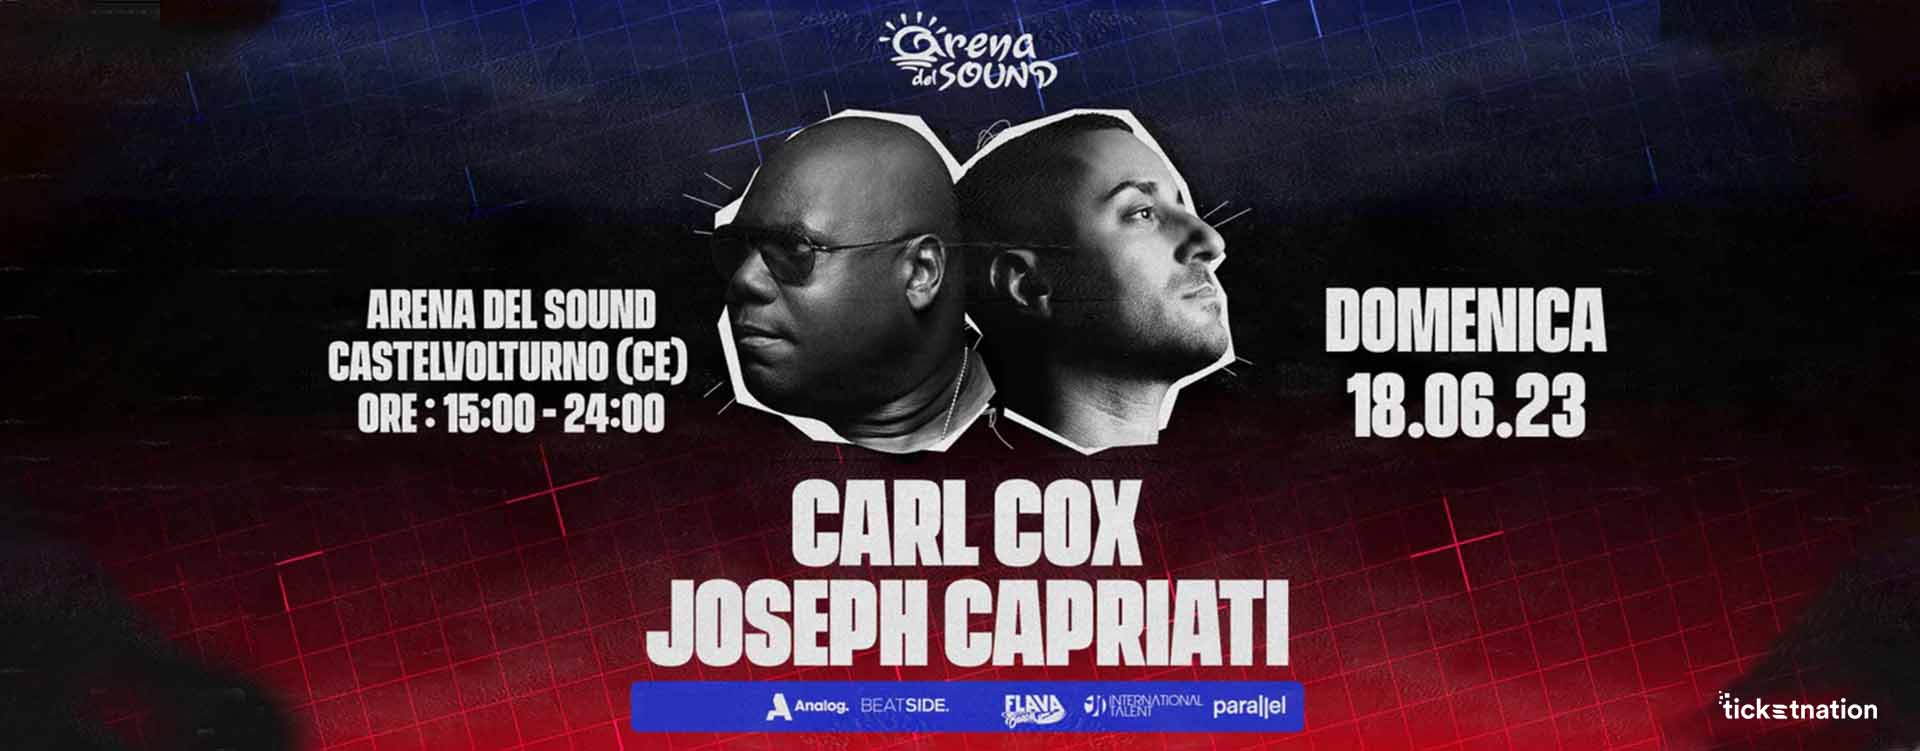 joseph-capriati-carl-cox-arena-del-sound-castelvolturno-18-giugno-2023